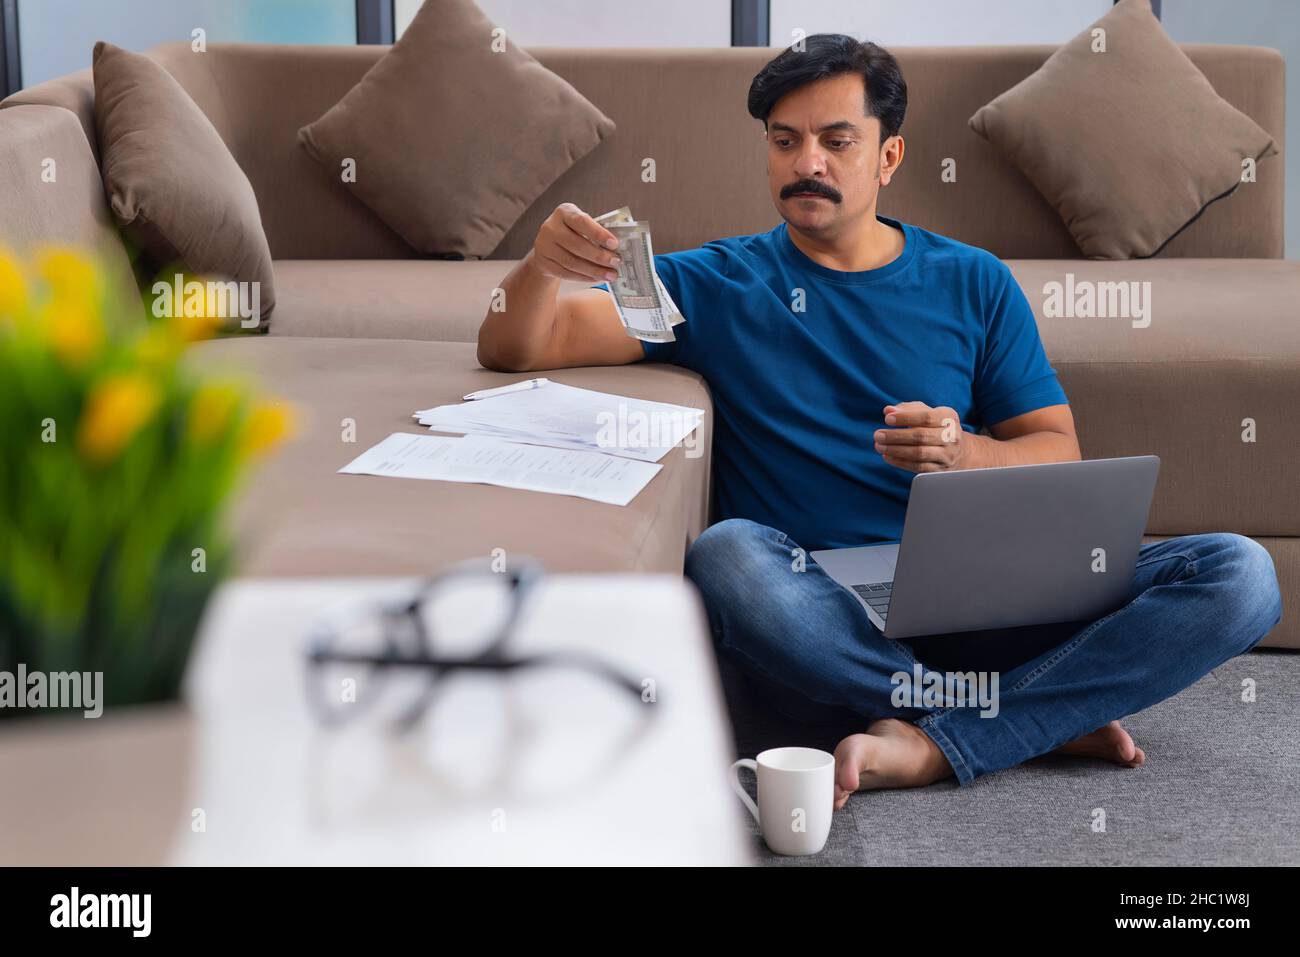 Mann, der indische Währung berechnet, während er auf dem Boden mit einem Laptop auf dem Schoß sitzt Stockfoto